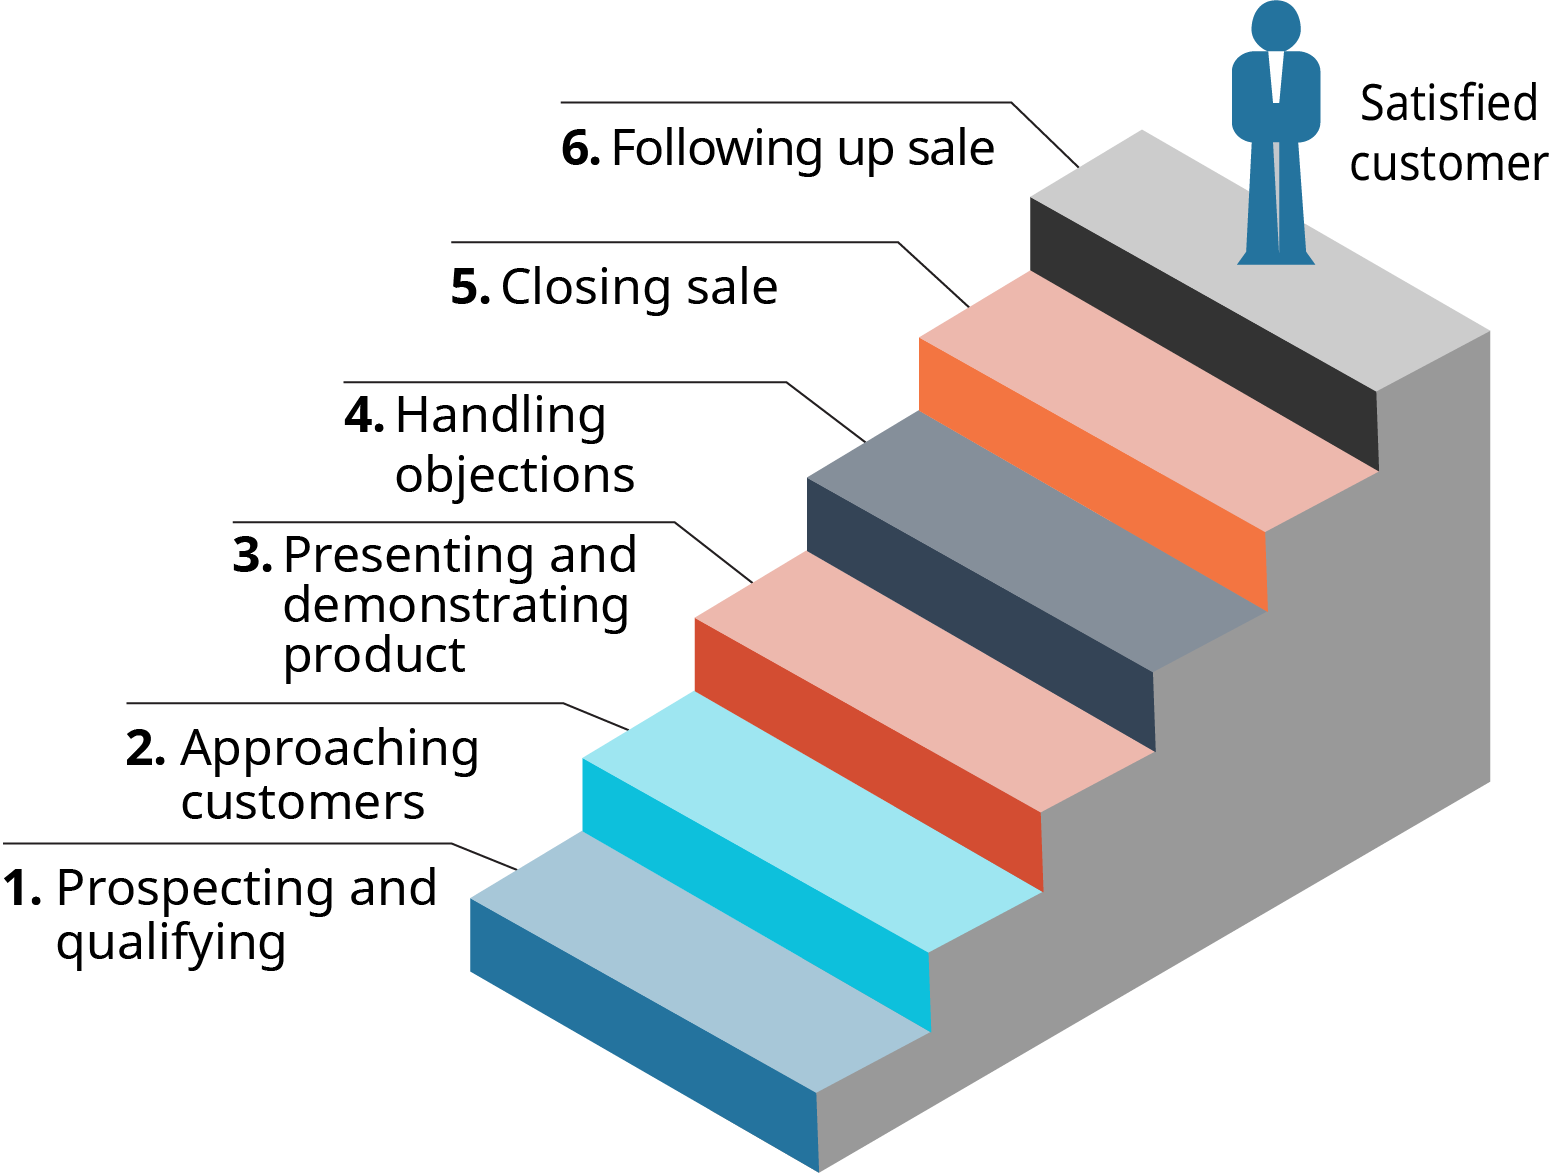 Un diagrama muestra los 6 pasos en el proceso de venta como una escalera.